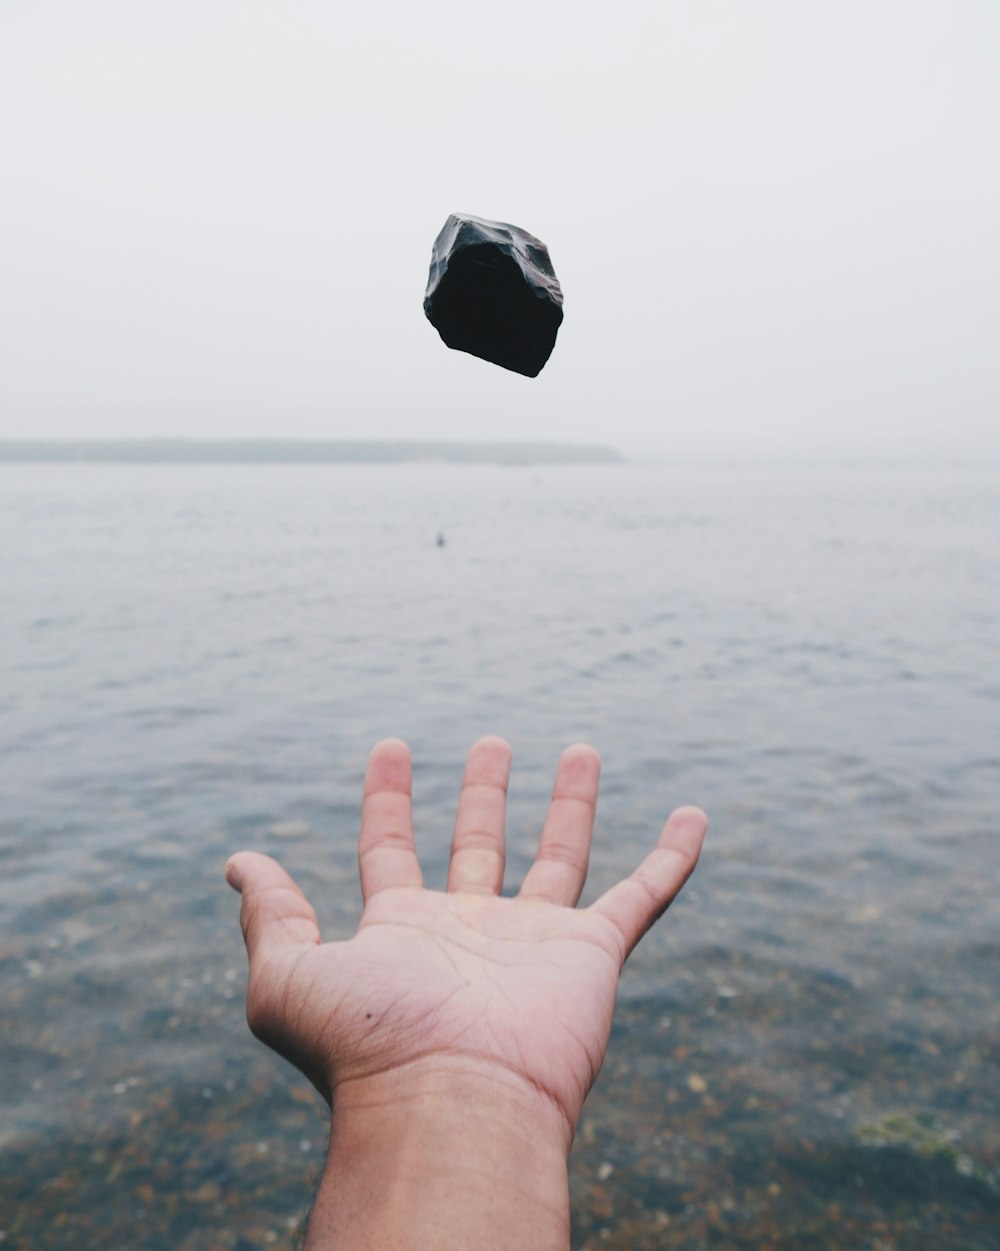 personne jetant une pierre noire sur l’eau